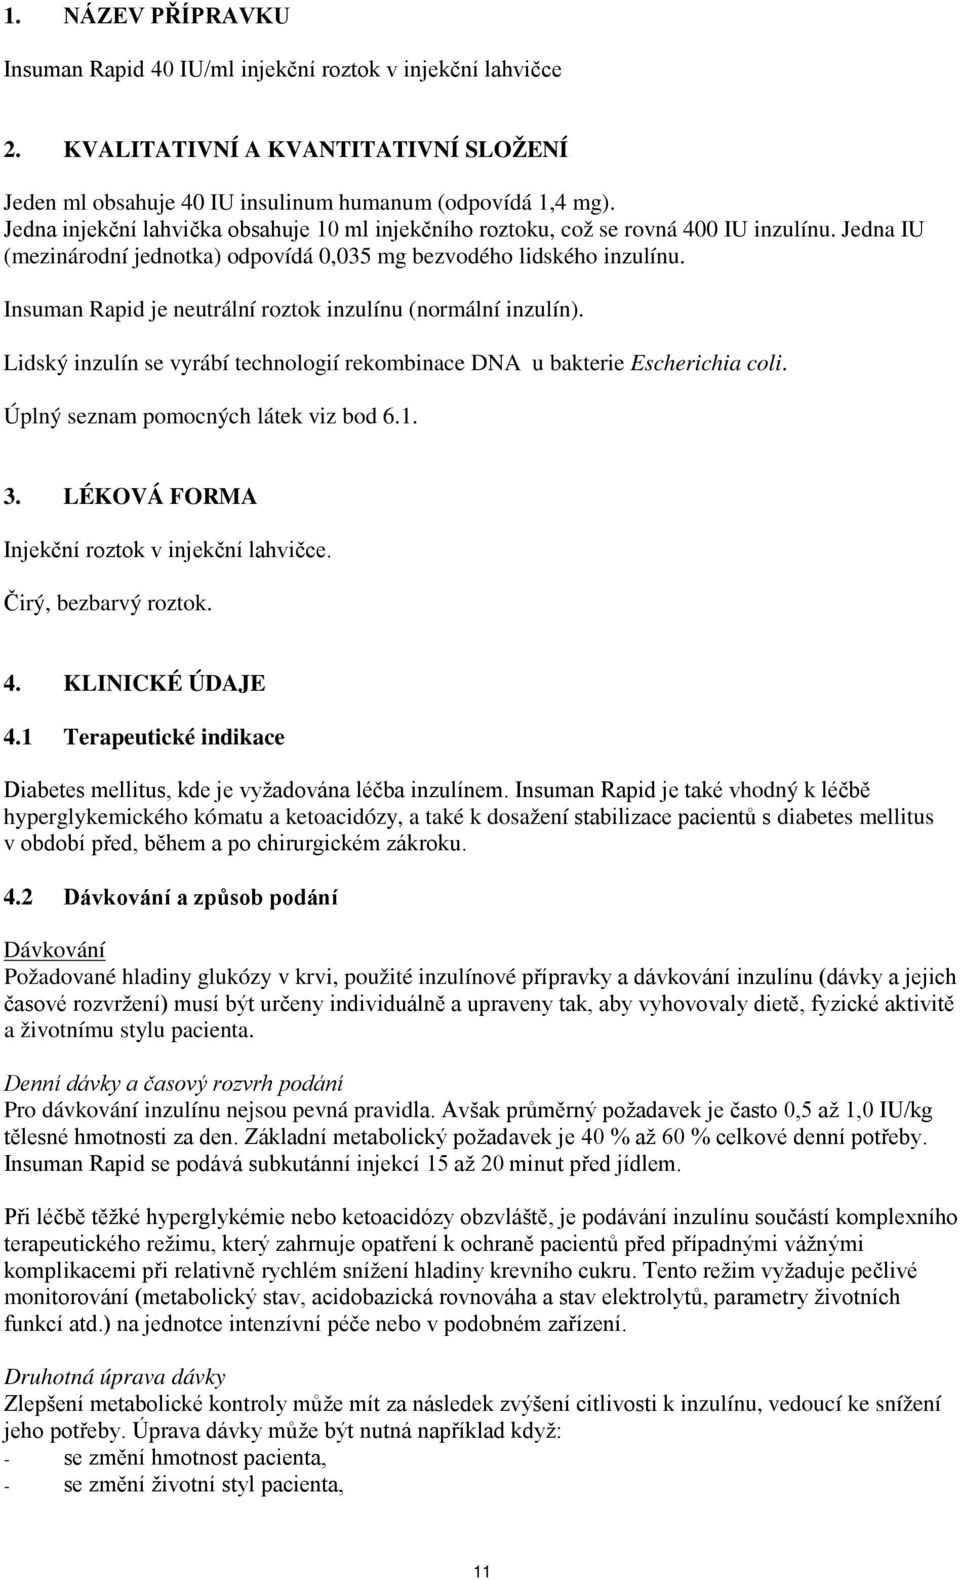 Insuman Rapid je neutrální roztok inzulínu (normální inzulín). Lidský inzulín se vyrábí technologií rekombinace DNA u bakterie Escherichia coli. Úplný seznam pomocných látek viz bod 6.1. 3.